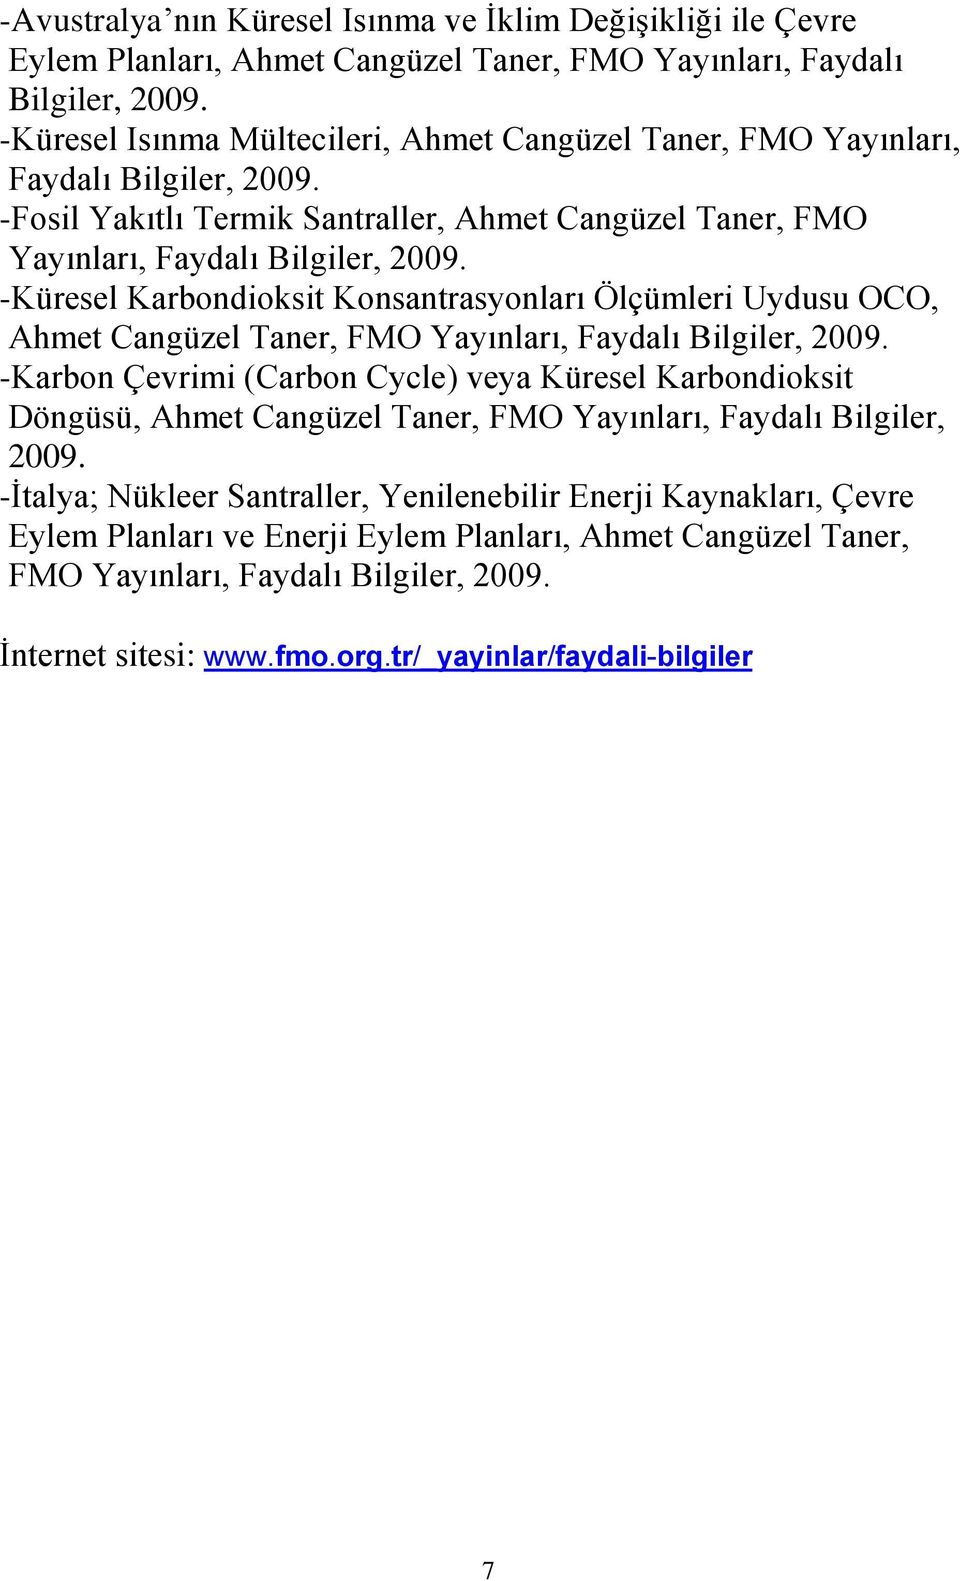 -Küresel Karbondioksit Konsantrasyonları Ölçümleri Uydusu OCO, Ahmet Cangüzel Taner, FMO Yayınları, Faydalı Bilgiler, 2009.